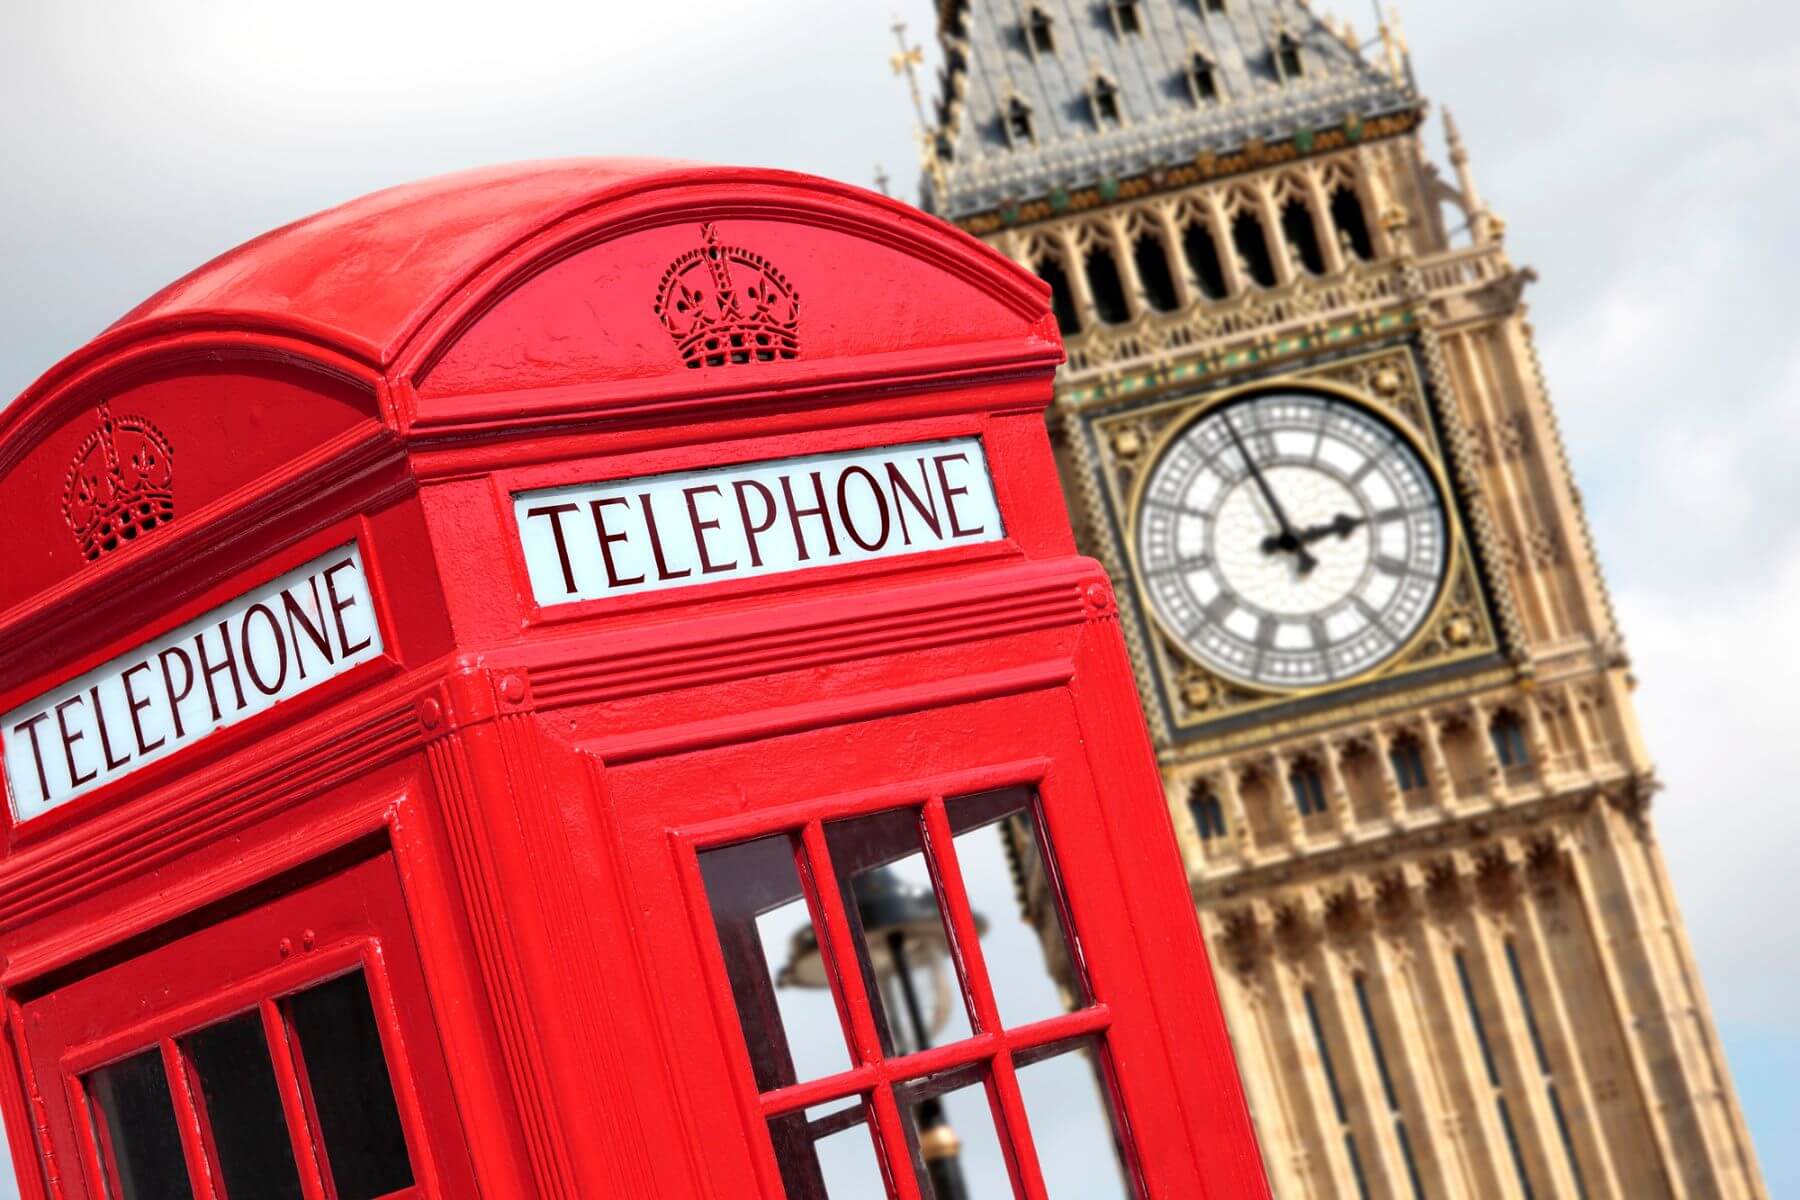 Problemy z rejestracją vat w UK: Big Ben oraz budka telefoniczna